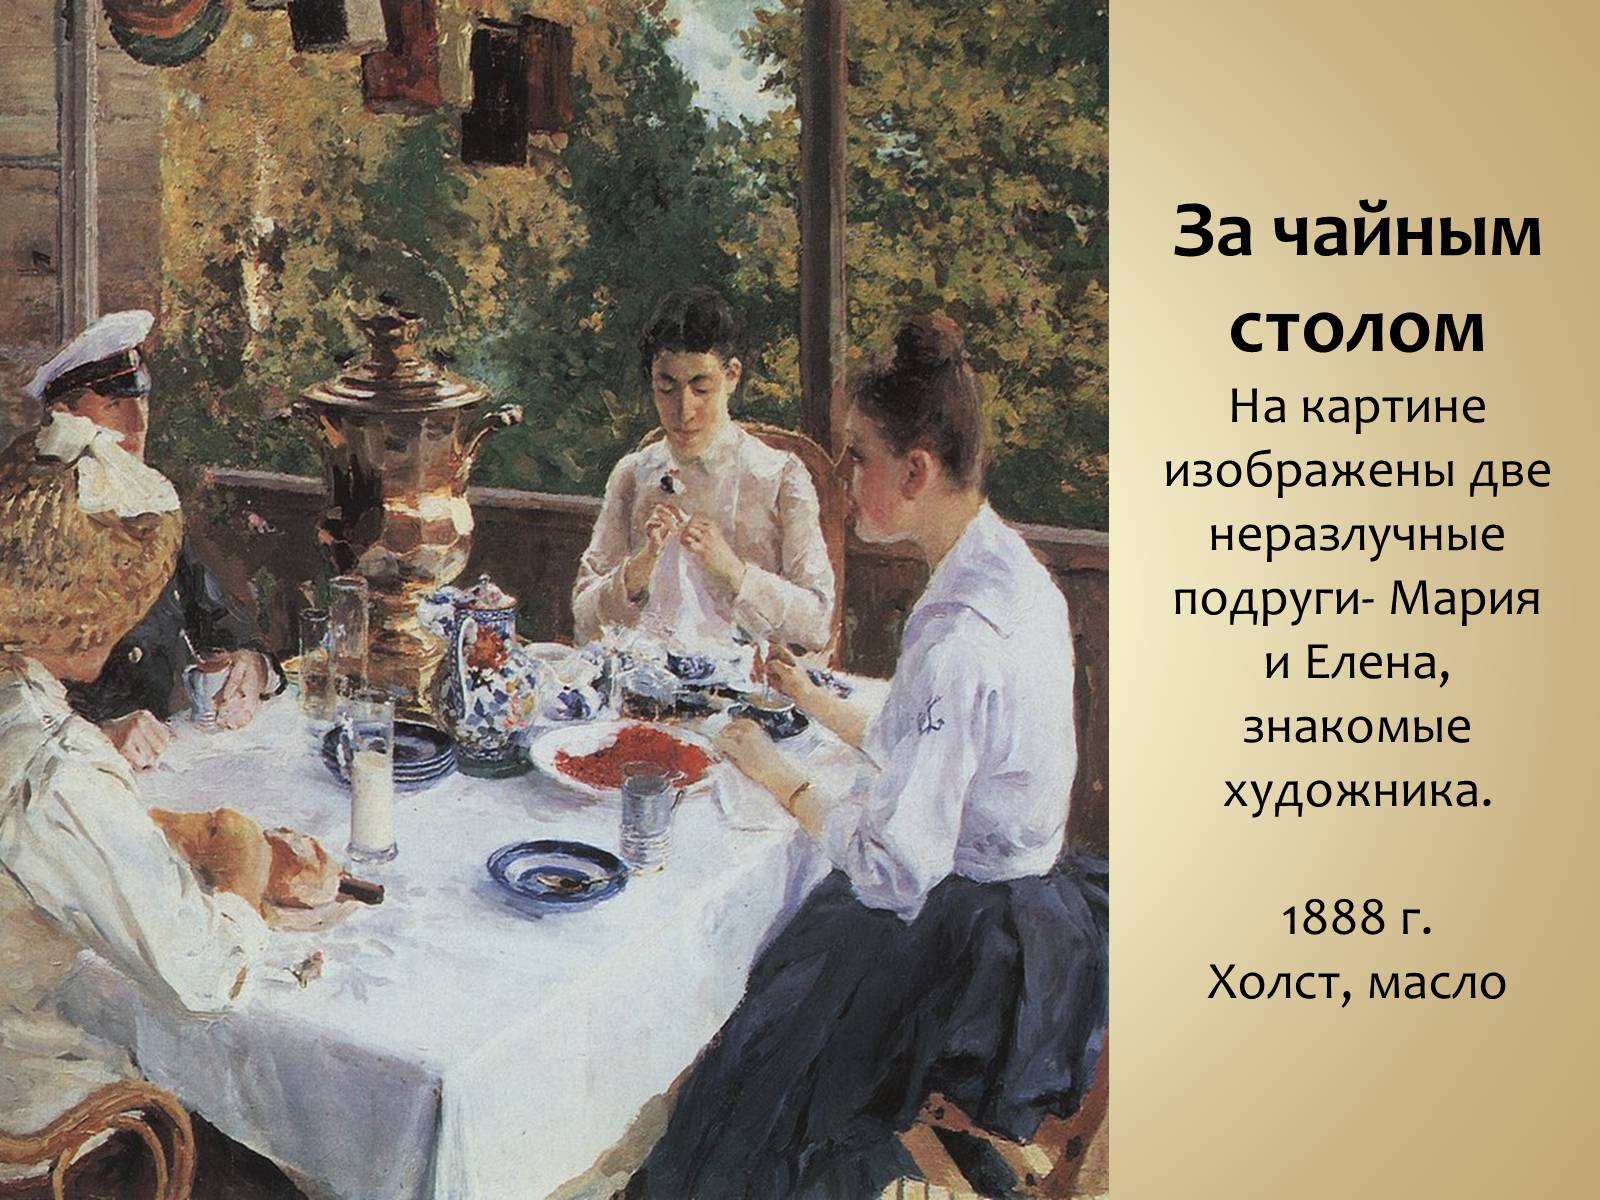 Как пишется чаепитие или чаяпитие. Константина Коровина "за чайным столом"..